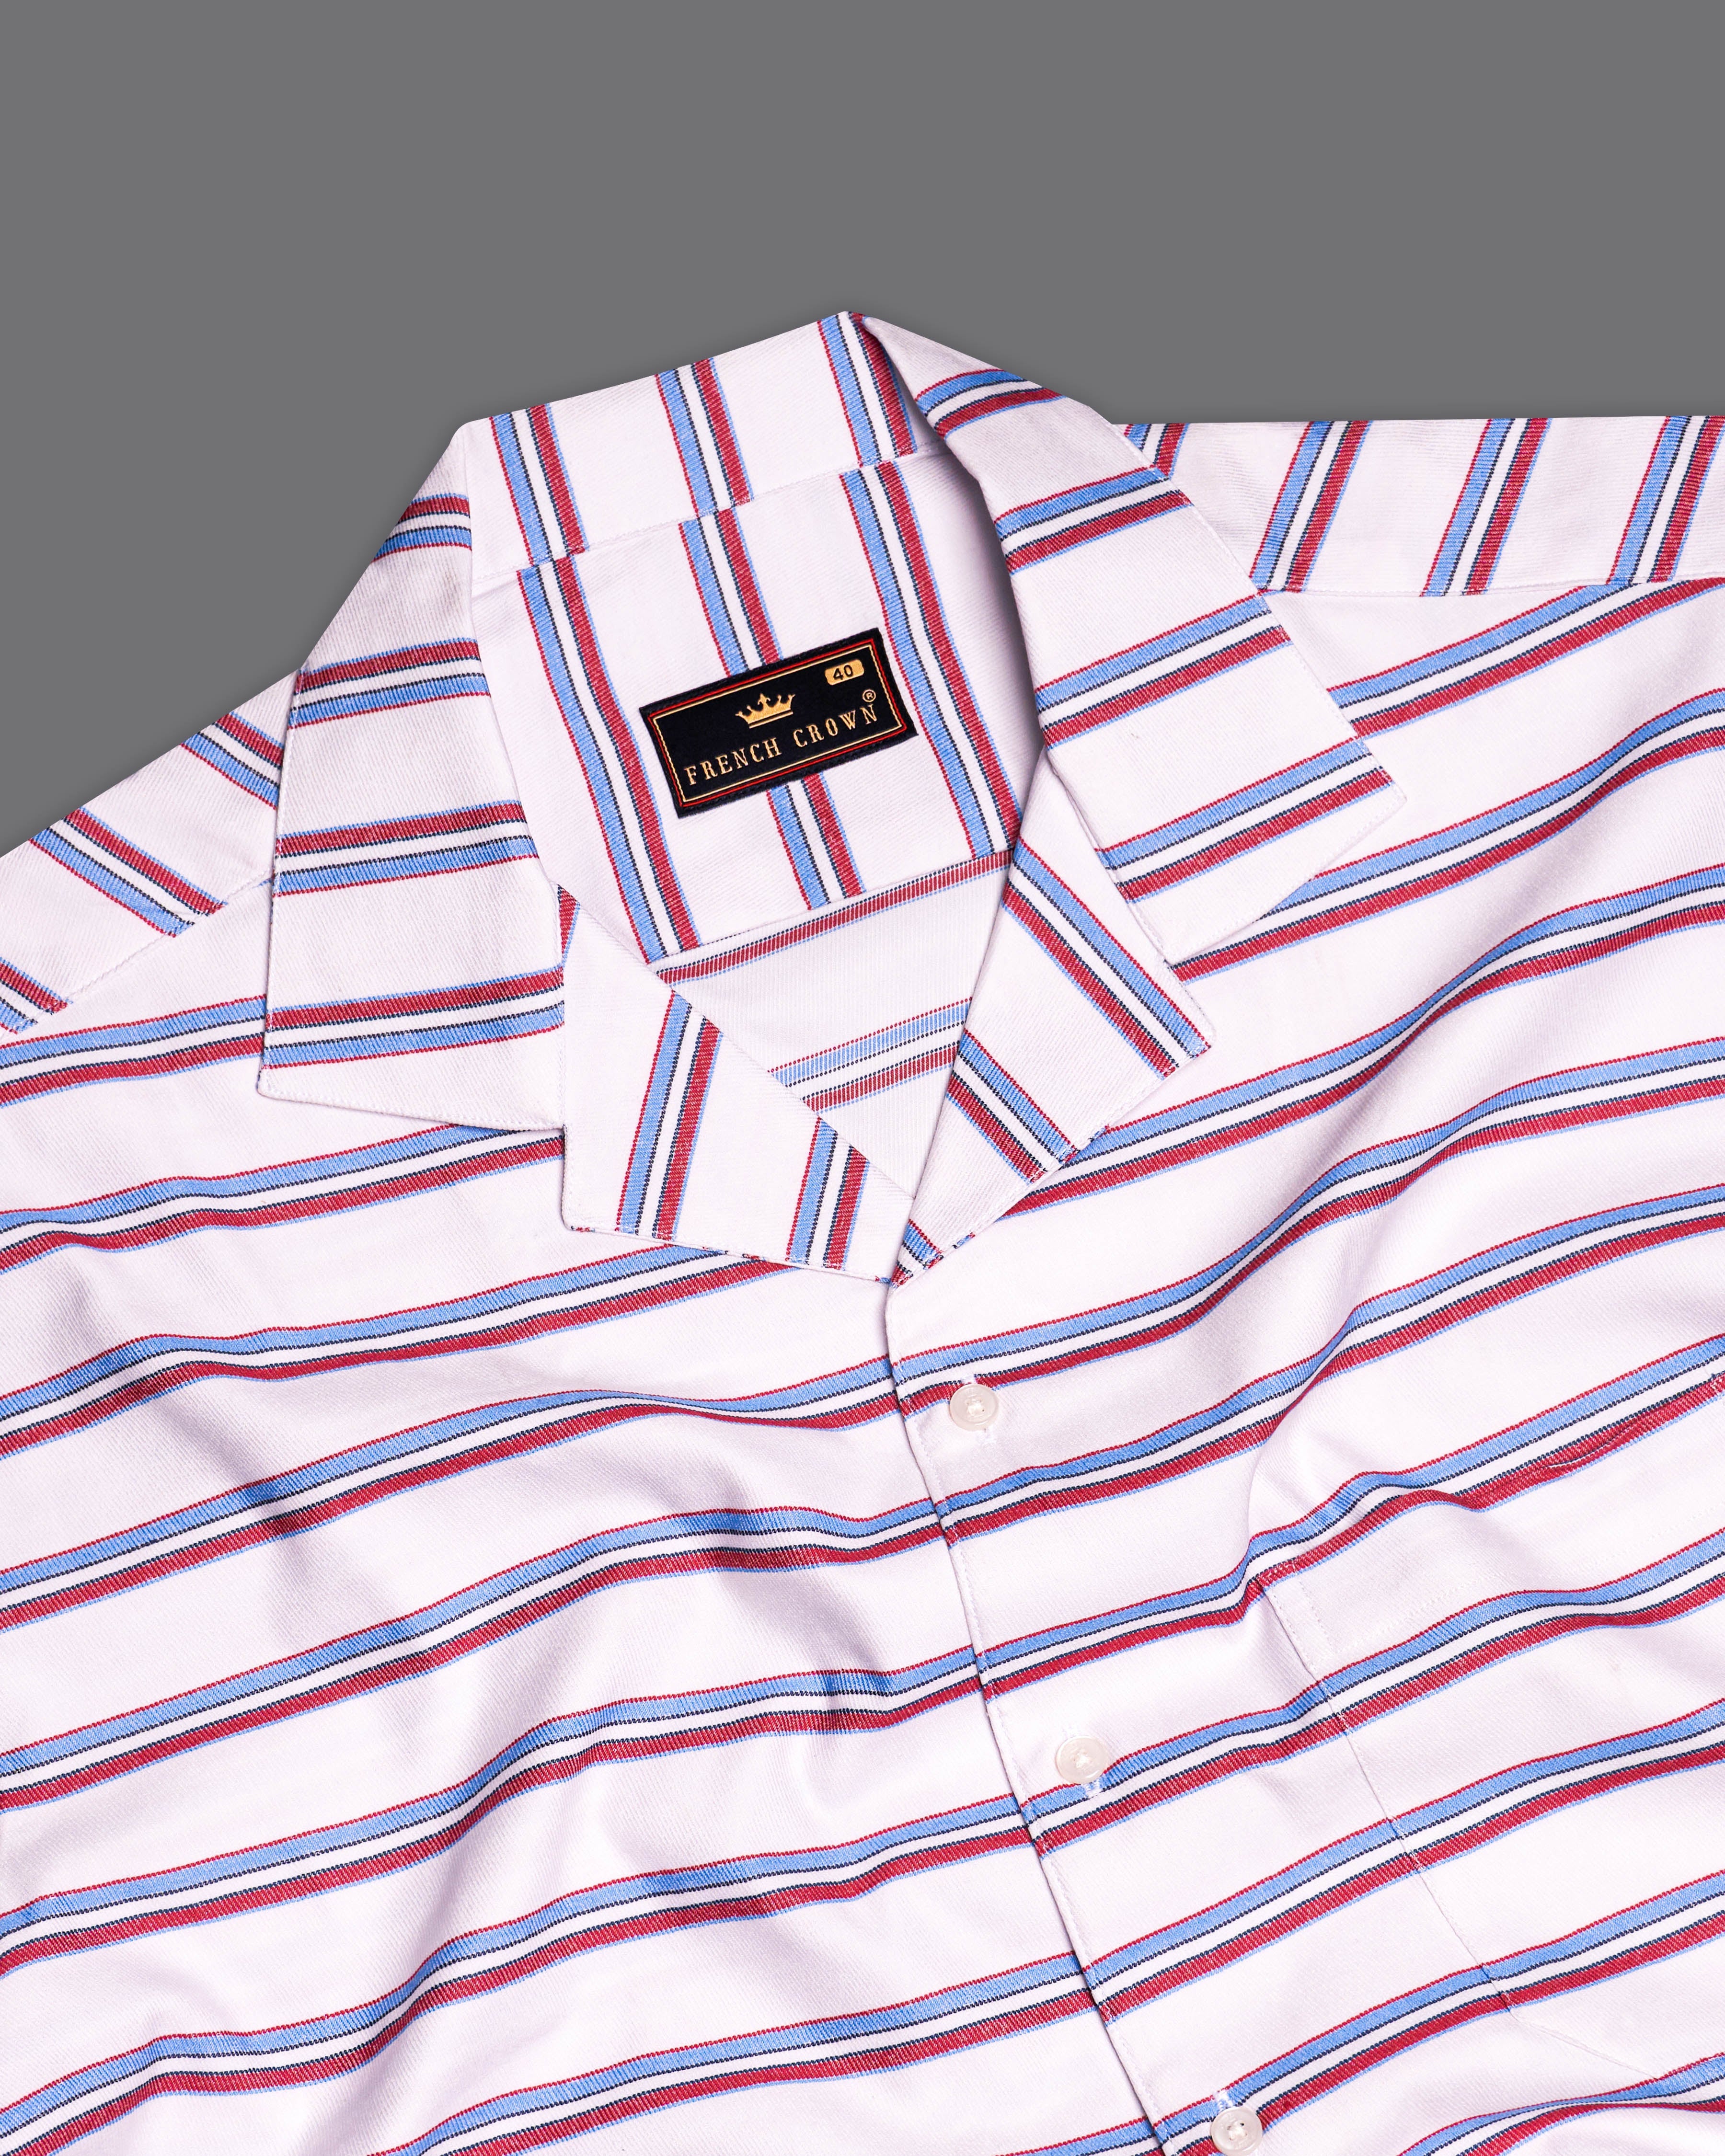 Bright White Multicolour Twill Striped Premium Cotton Half Sleeves Shirt 9662-CC-SS-H-38, 9662-CC-SS-H-39, 9662-CC-SS-H-40, 9662-CC-SS-H-42, 9662-CC-SS-H-44, 9662-CC-SS-H-46, 9662-CC-SS-H-48, 9662-CC-SS-H-50, 9662-CC-SS-H-52